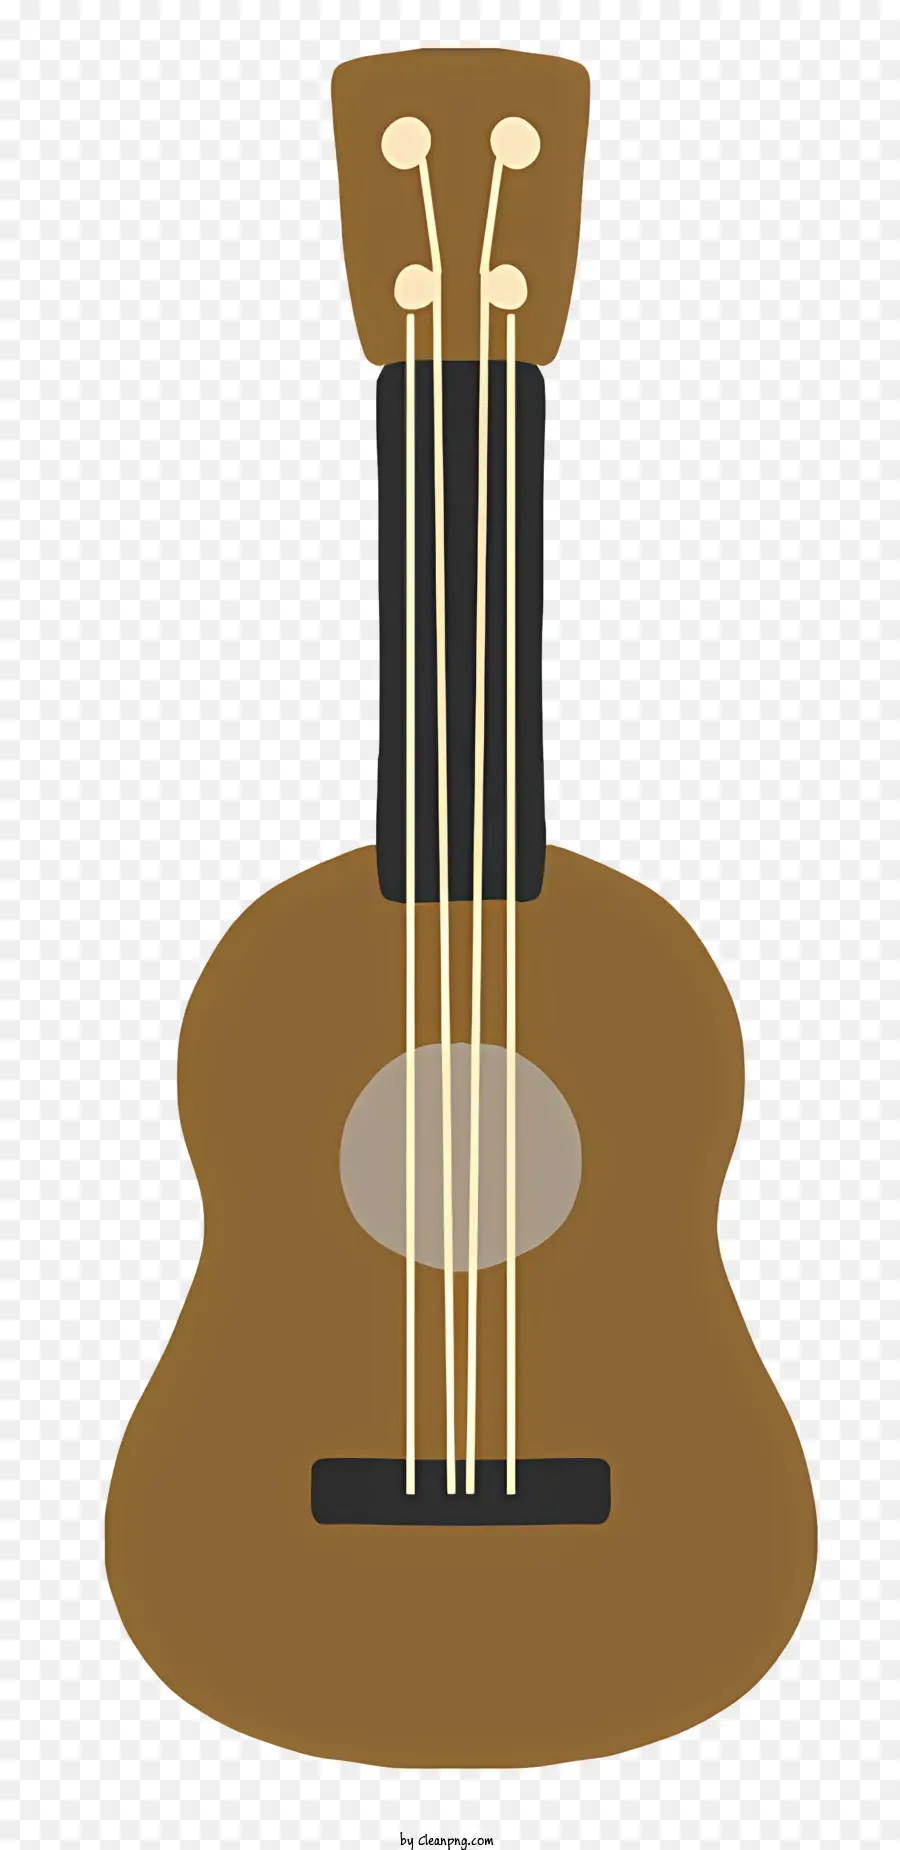 đàn ghi ta - Hình ảnh rõ ràng, xác định của guitar màu nâu với các điểm nhấn màu đen